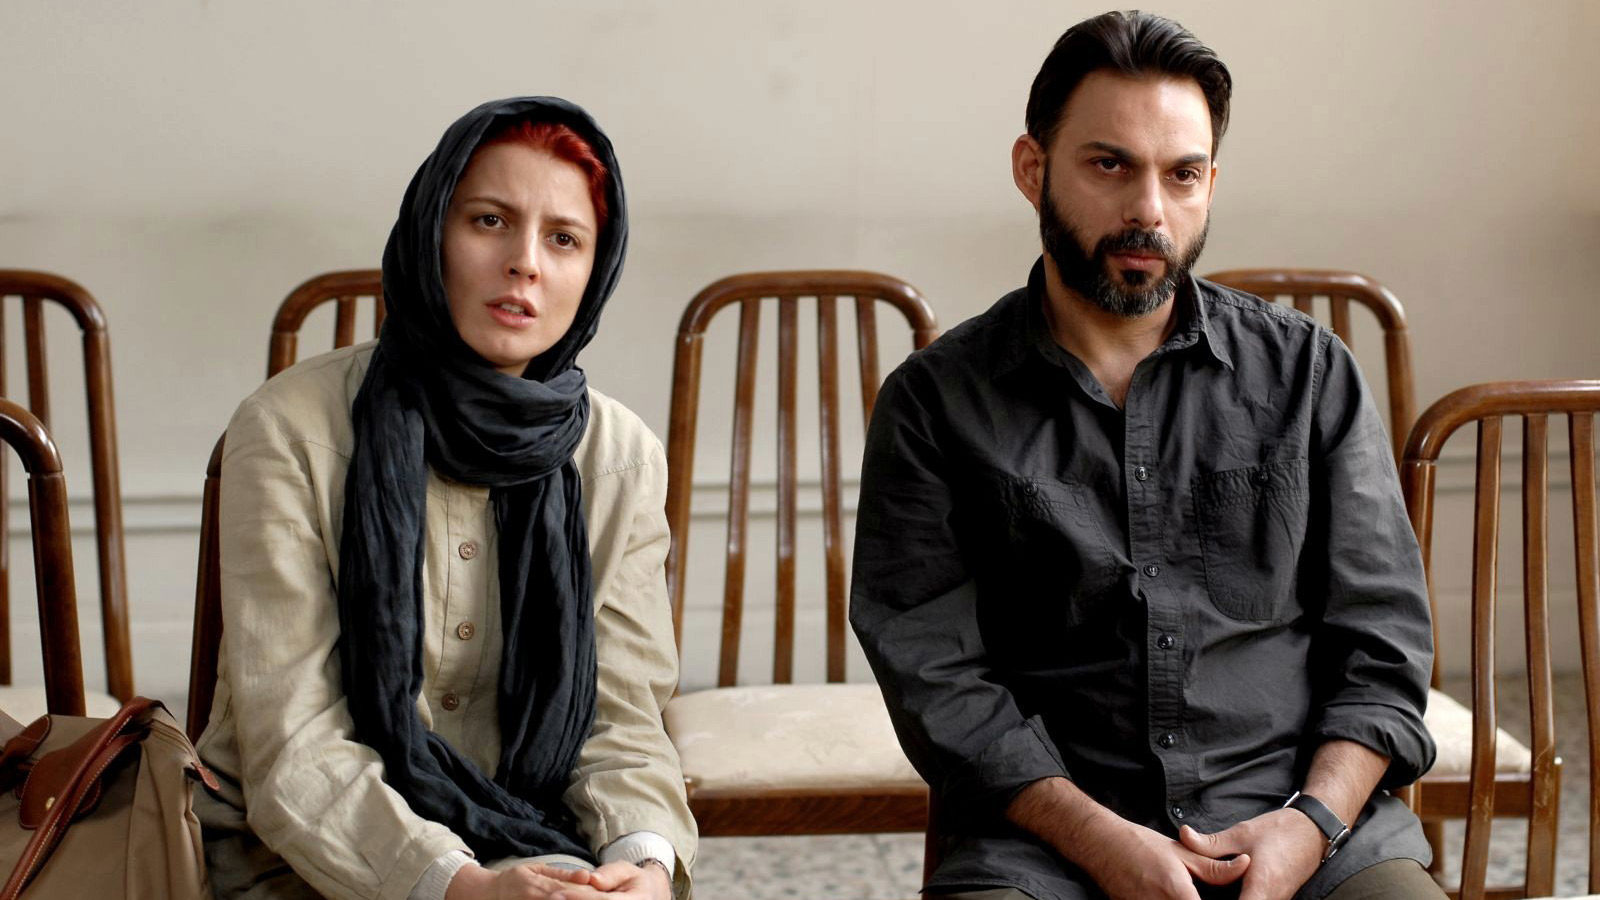 در ادامه این مطلب قصد داریم شما را با 5 فیلم ایرانی که در تاریخ سینمای ایران نامزد دریافت جایزه اسکار شده اند آشنا کنیم